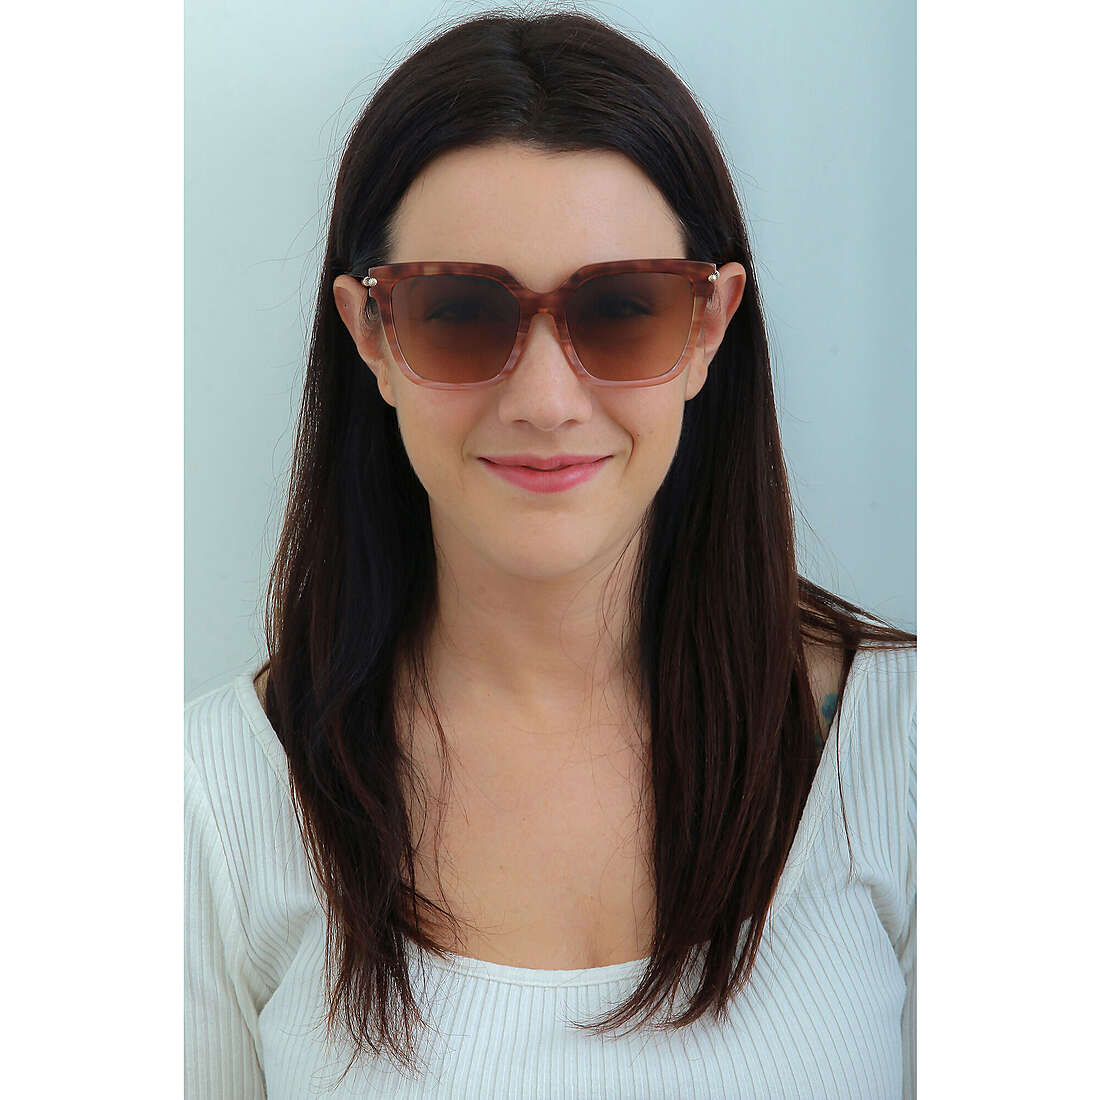 Twinset occhiali da sole donna STW02205GY indosso